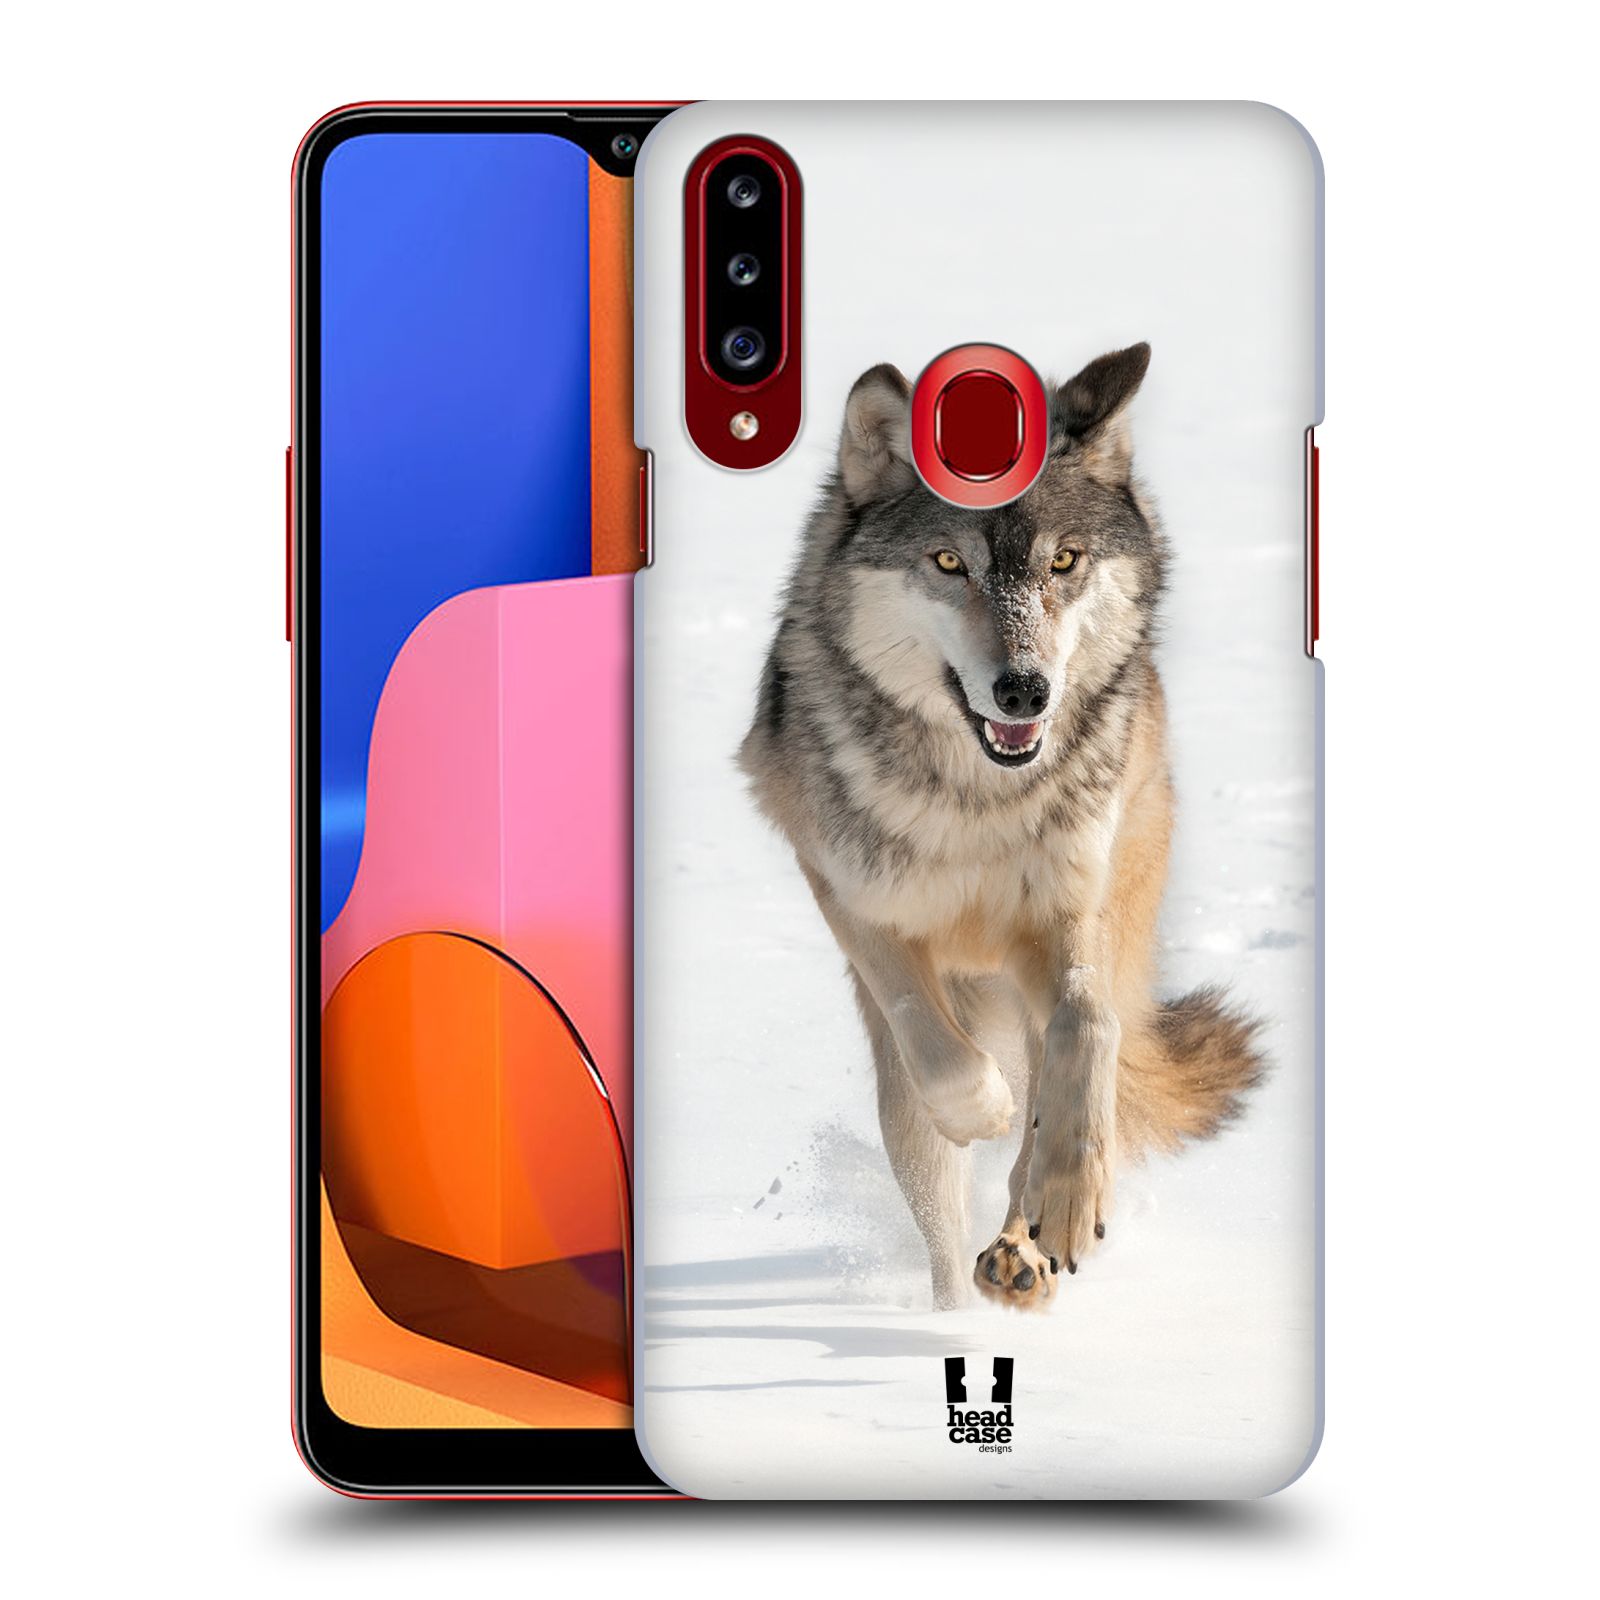 Zadní obal pro mobil Samsung Galaxy A20s - HEAD CASE - Svět zvířat divoký vlk